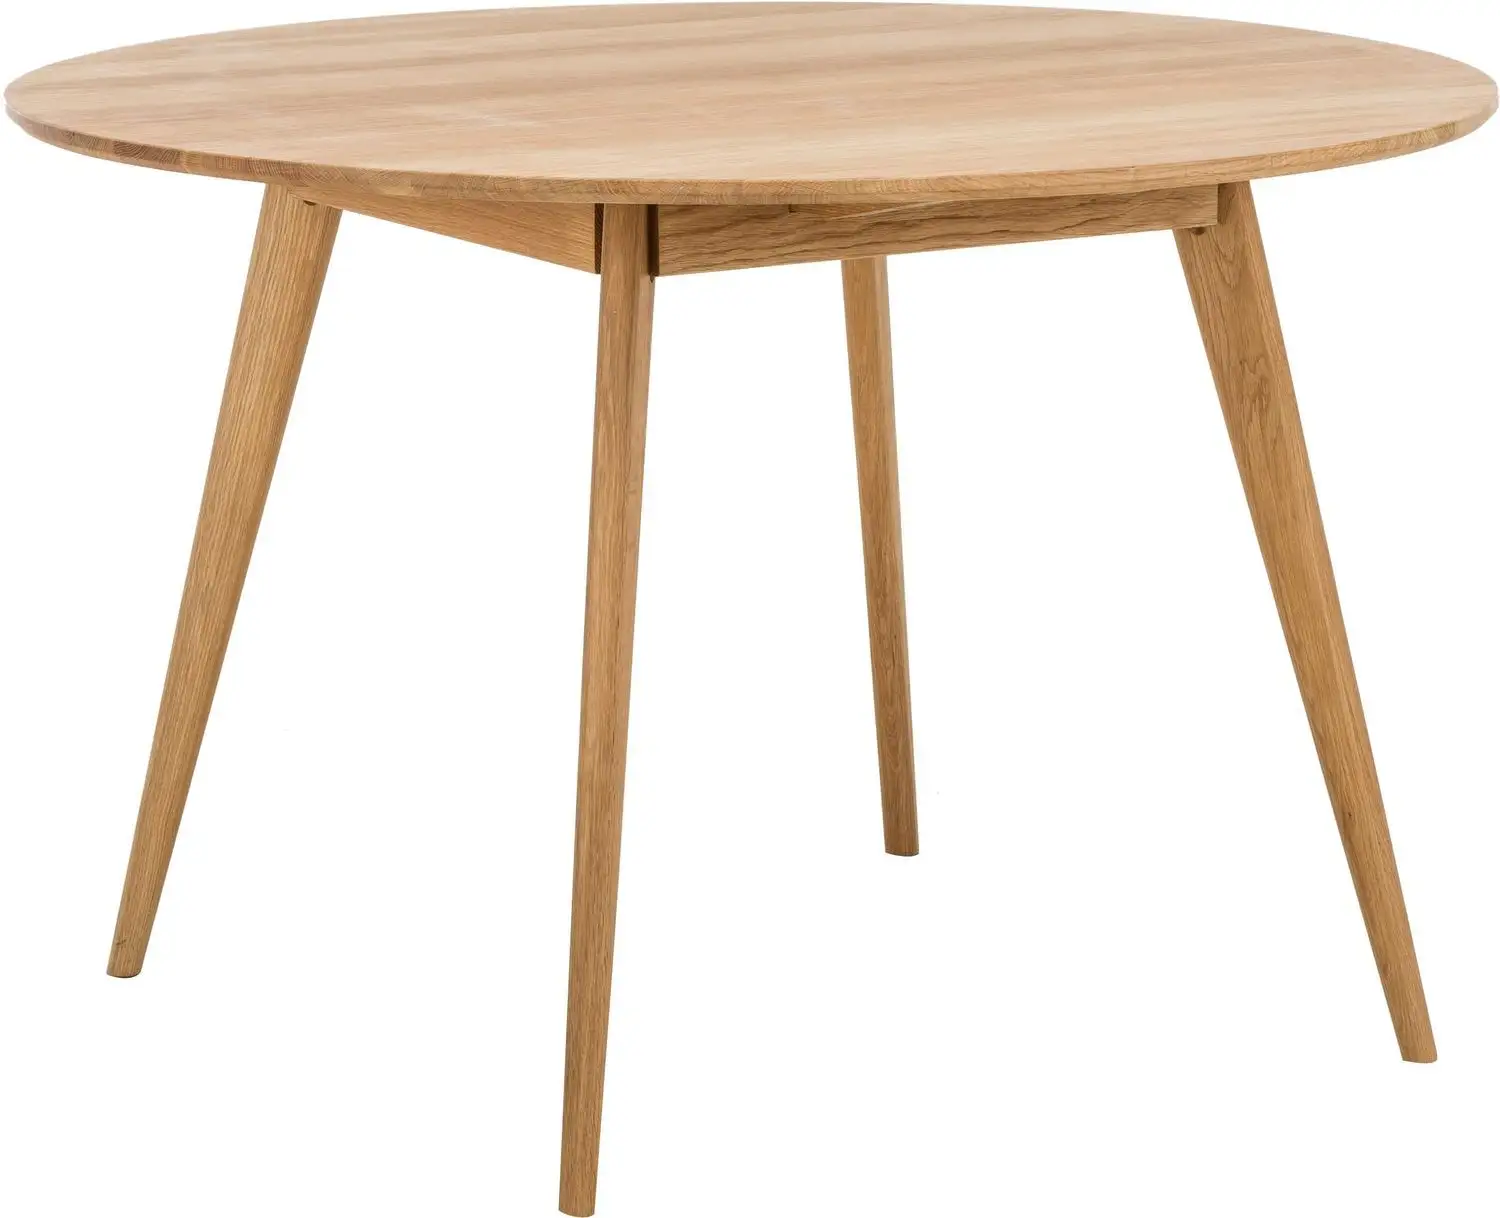 Kaliteli katı ahşap tik yuvarlak yemek masası toptan Modern tarzı ev ve restoran için yemek masası mobilya